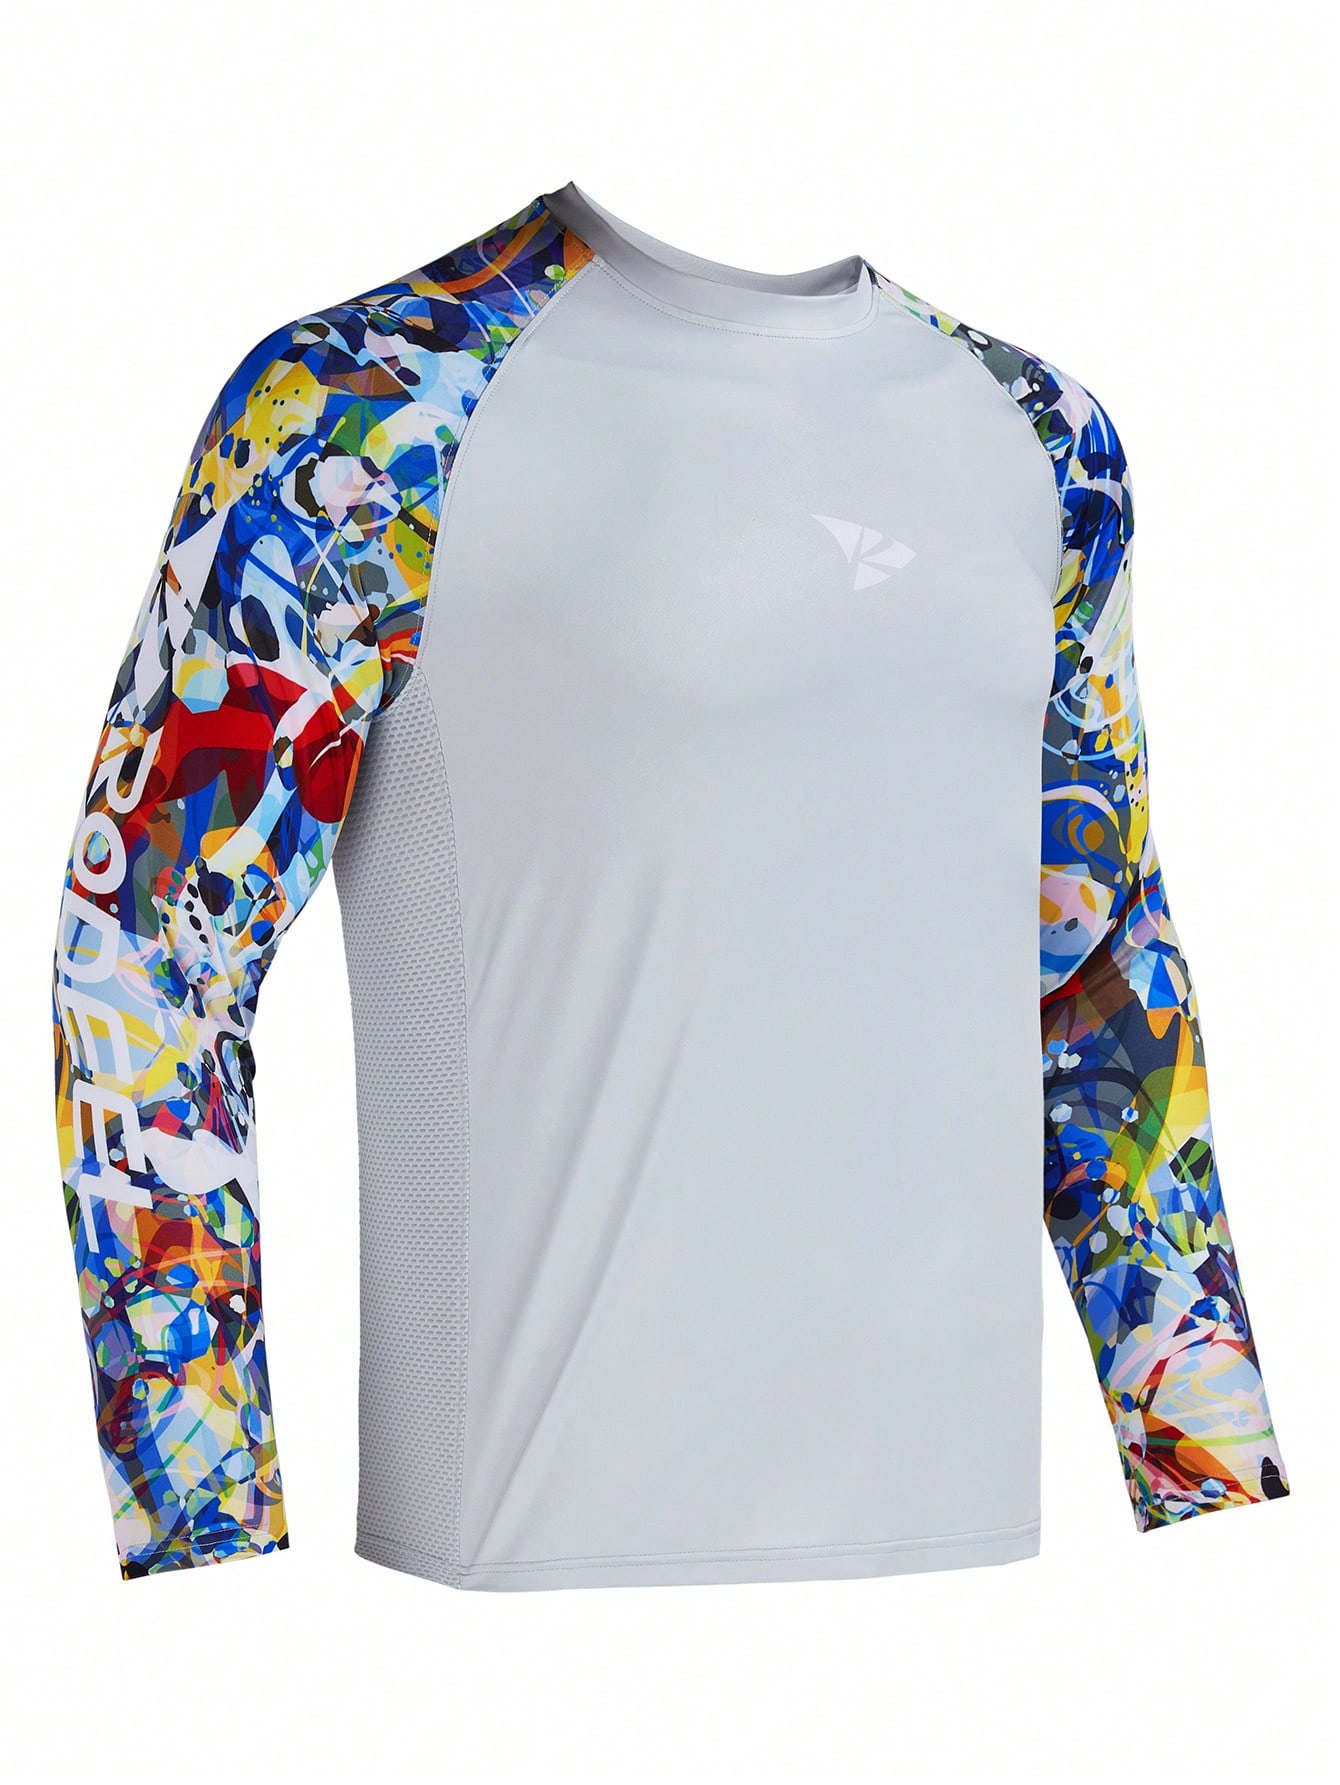 RODEEL Мужская рубашка с защитой от солнца, серый одежда daiwa футболка для рыбалки мужская дышащая быстросохнущая одежда для рыбалки daiwa летняя спортивная рубашка с коротким рукавом футбо